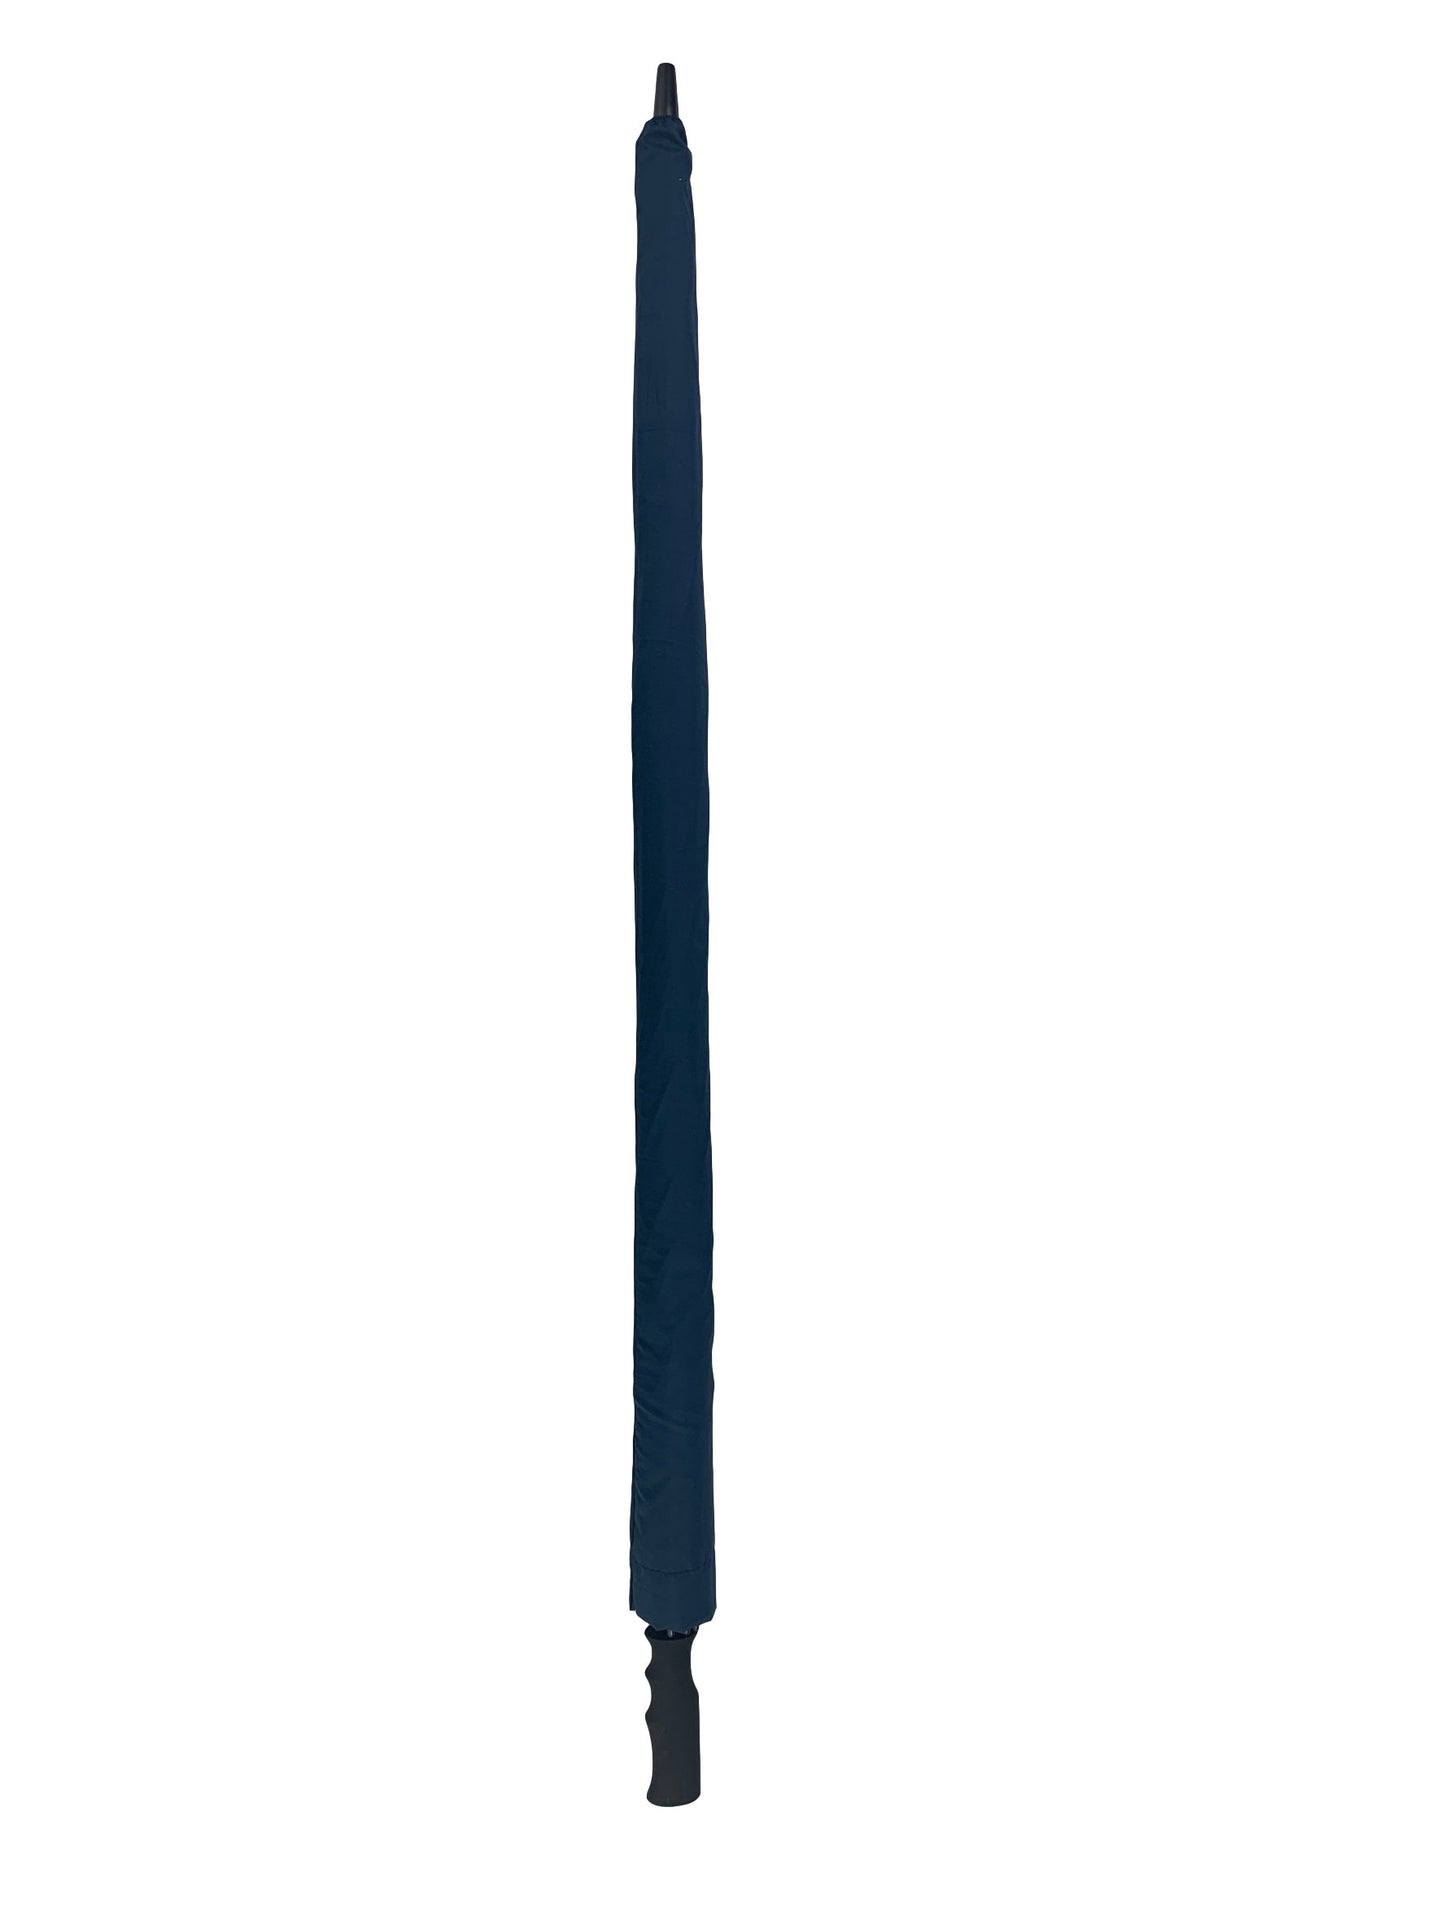 Μπλε Μαρίν (σκούρο), Ομπρέλα ΓΙΓΑΣ, με ιστό και ακτίνες από Ανθρακόνημα (κωδικός 01-03-0506).